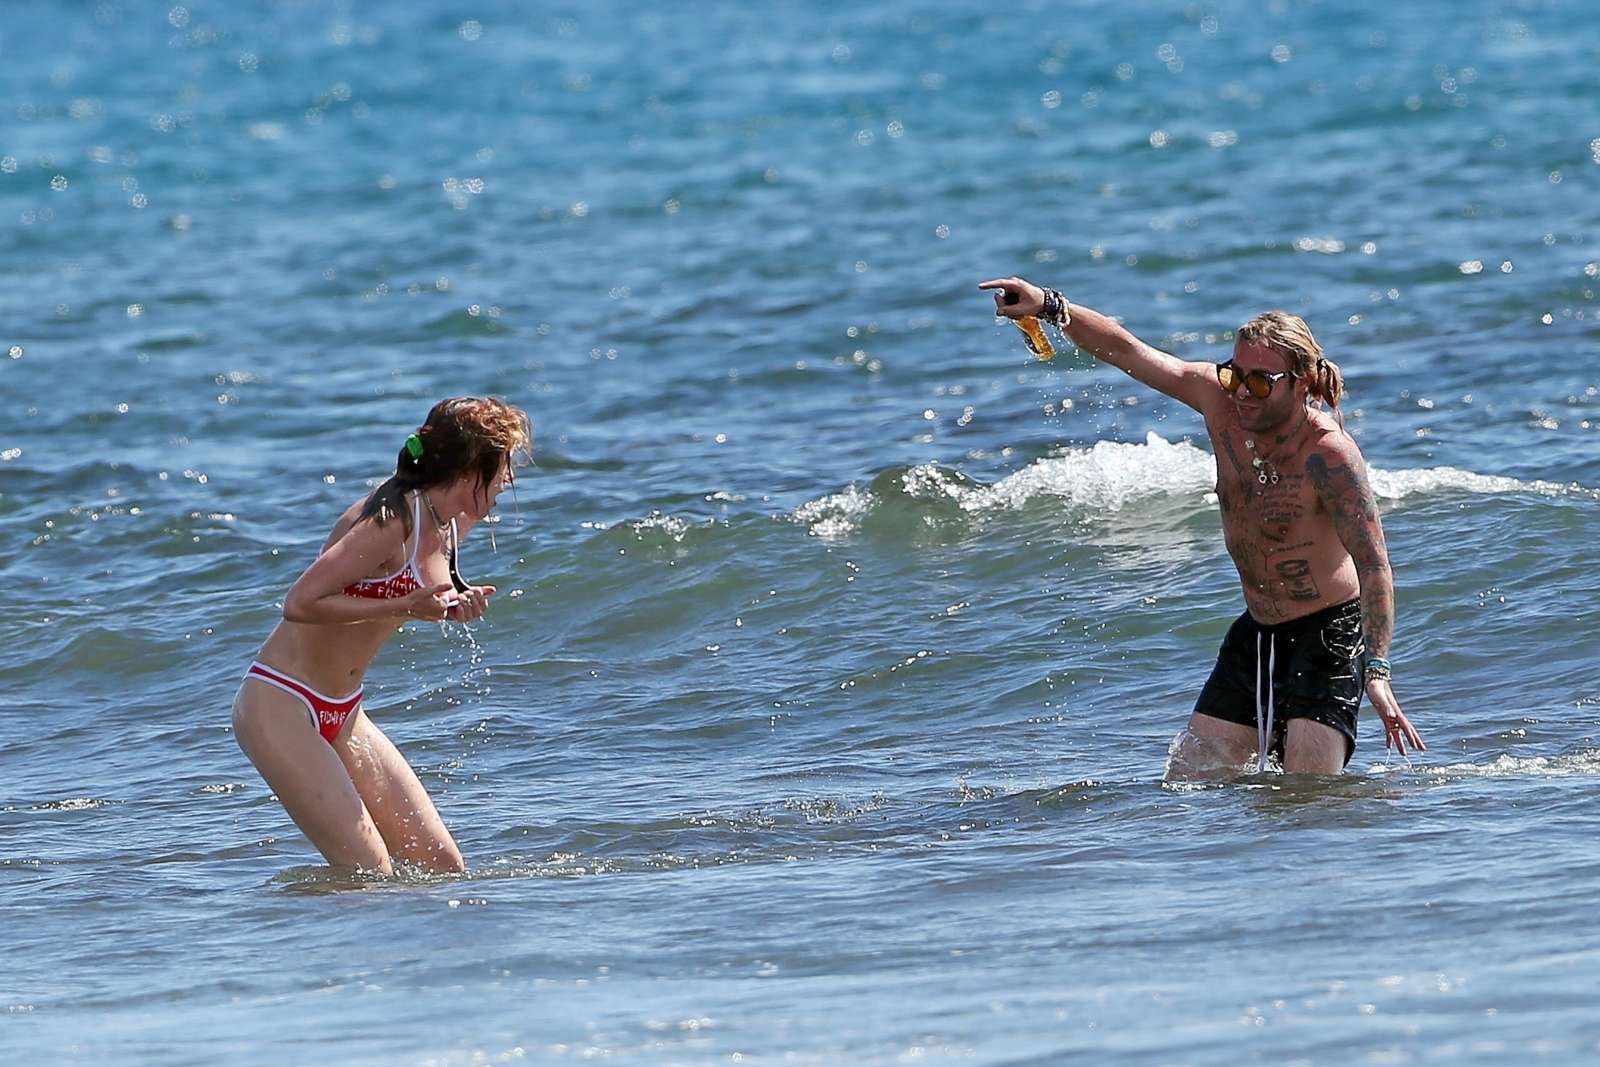 Bella Thorne in Bikini on the beach in Hawaii